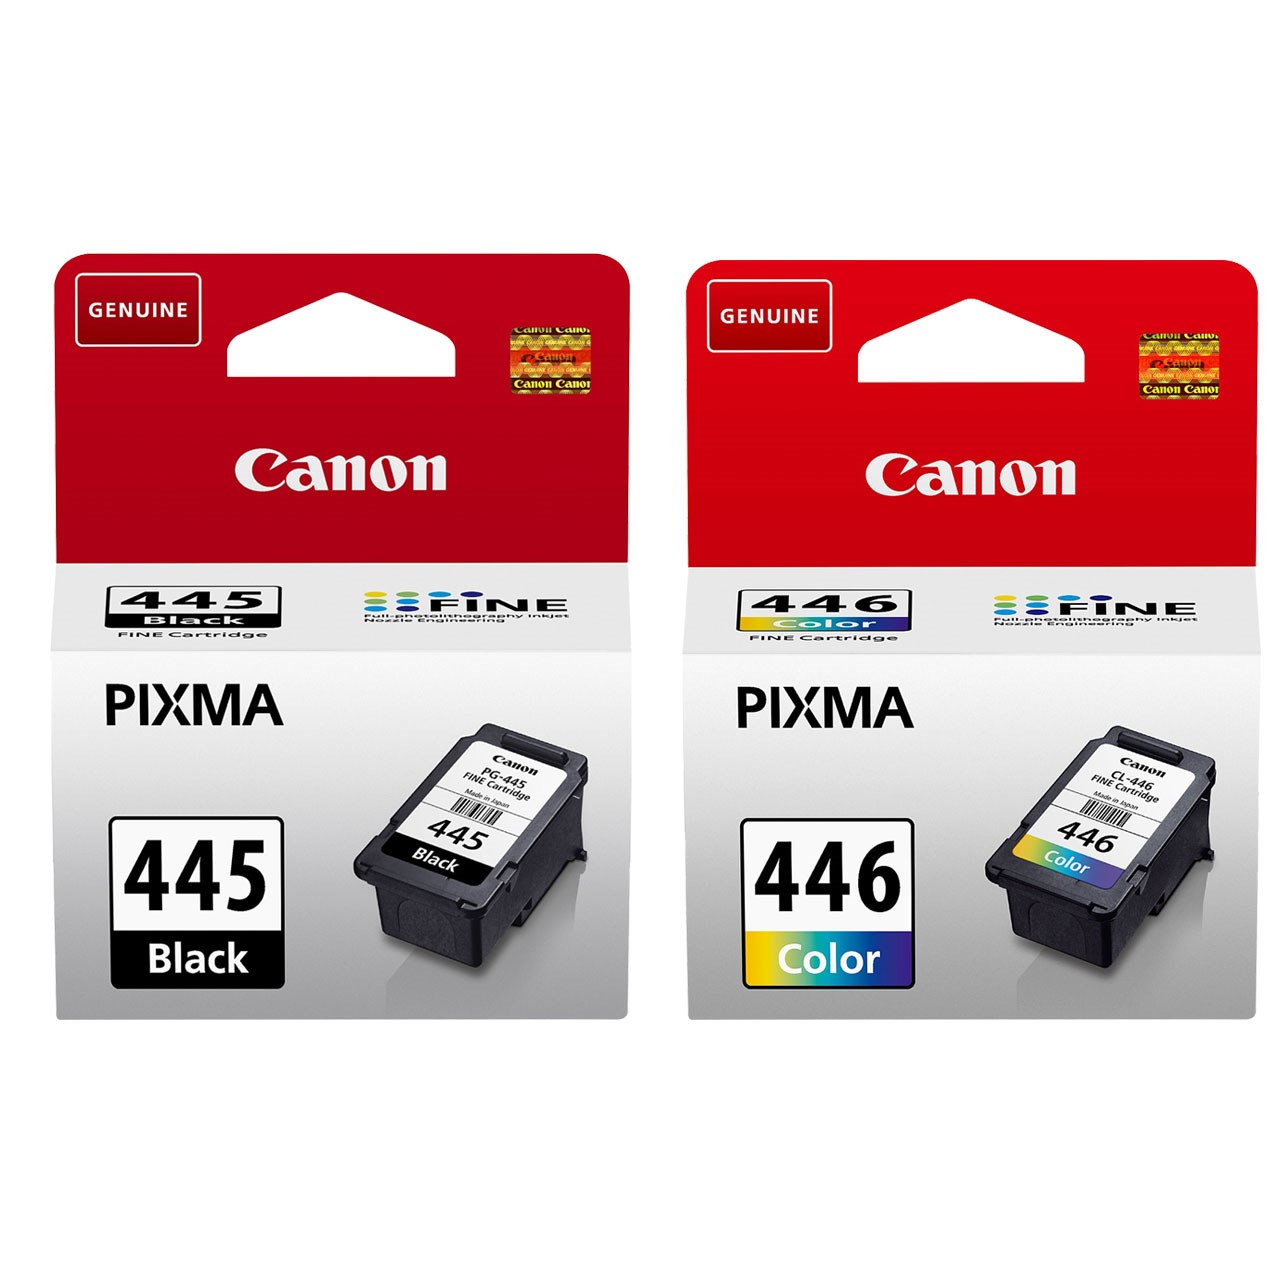 Картридж PIXMA 445 Black. PG-35 Cartridge. Cl0645. Canon pixma 445